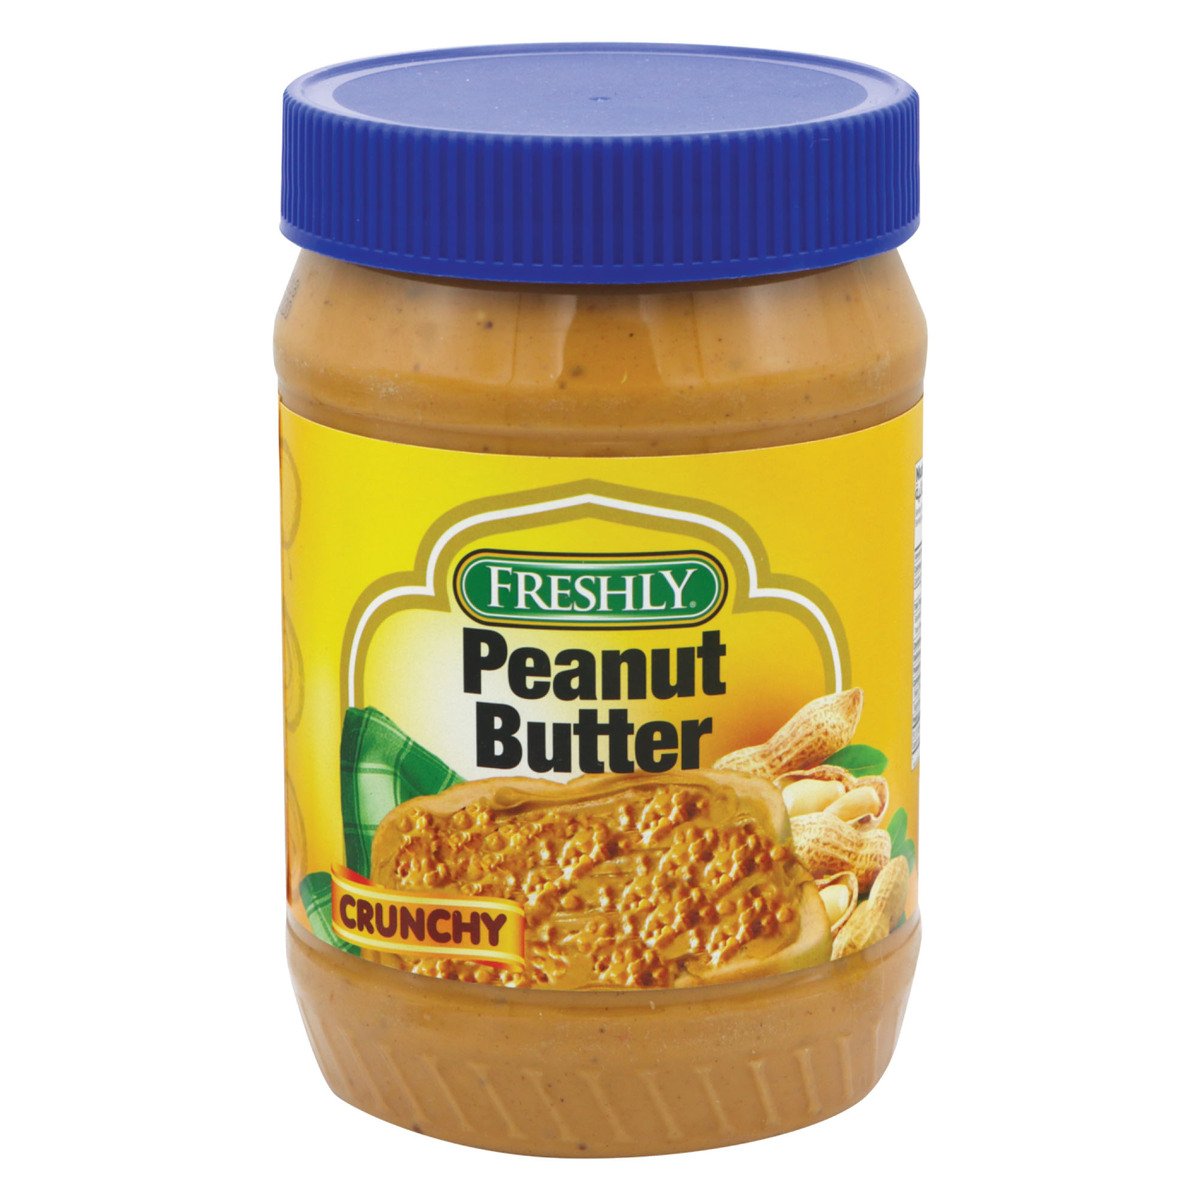 اشتري قم بشراء فرشلي زبدة الفول السوداني المقرمشة 28 اونصة Online at Best Price من الموقع - من لولو هايبر ماركت Peanut Butter في السعودية